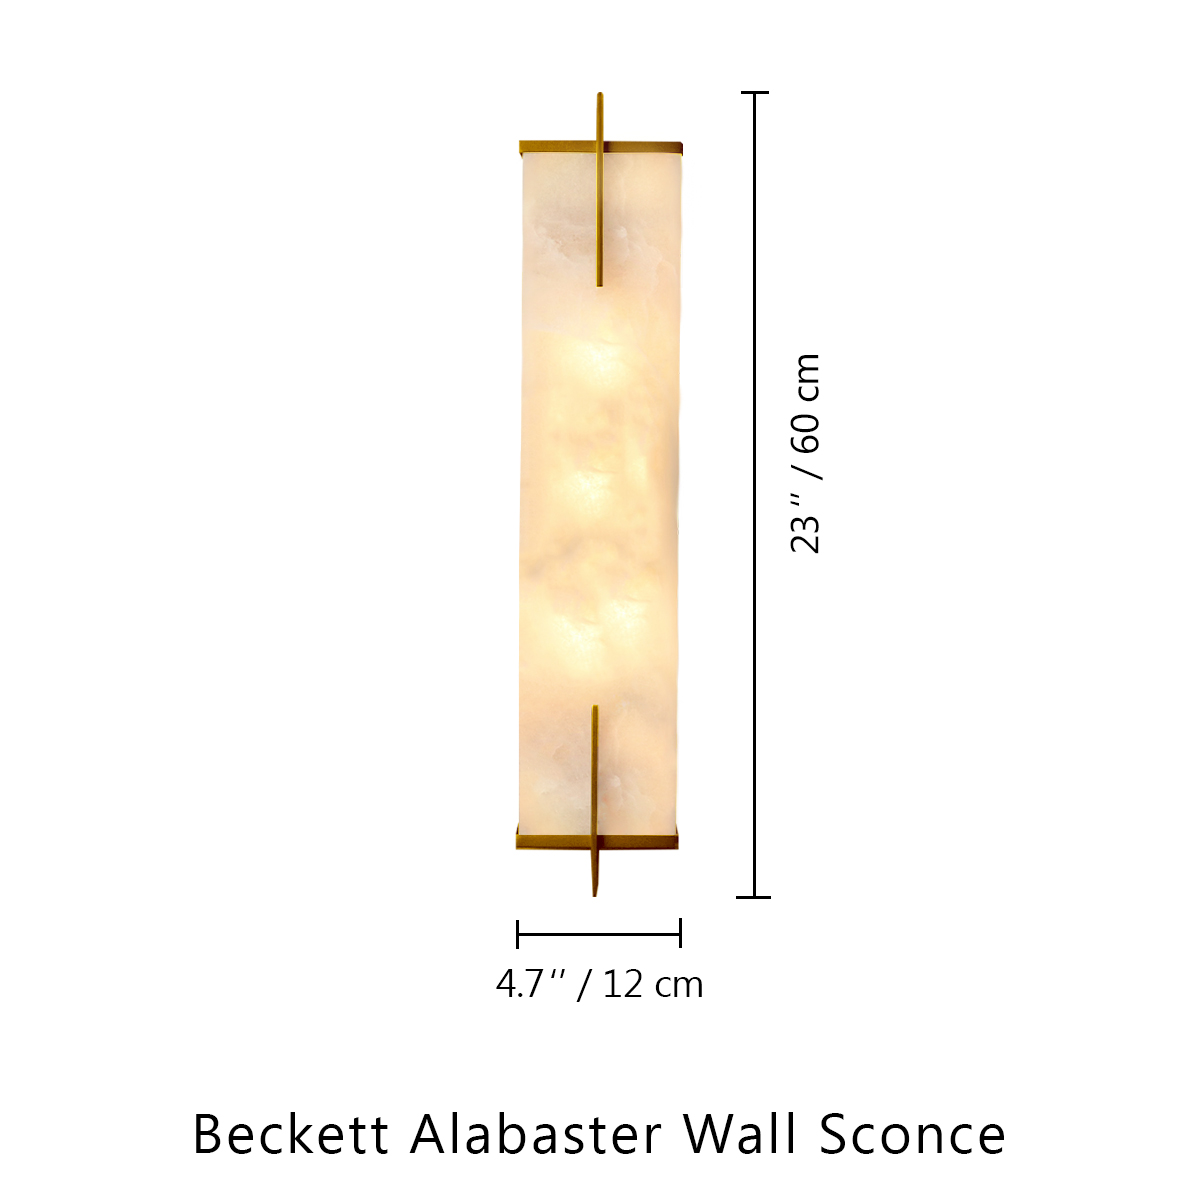 Beckett Alabaster Wall Sconce